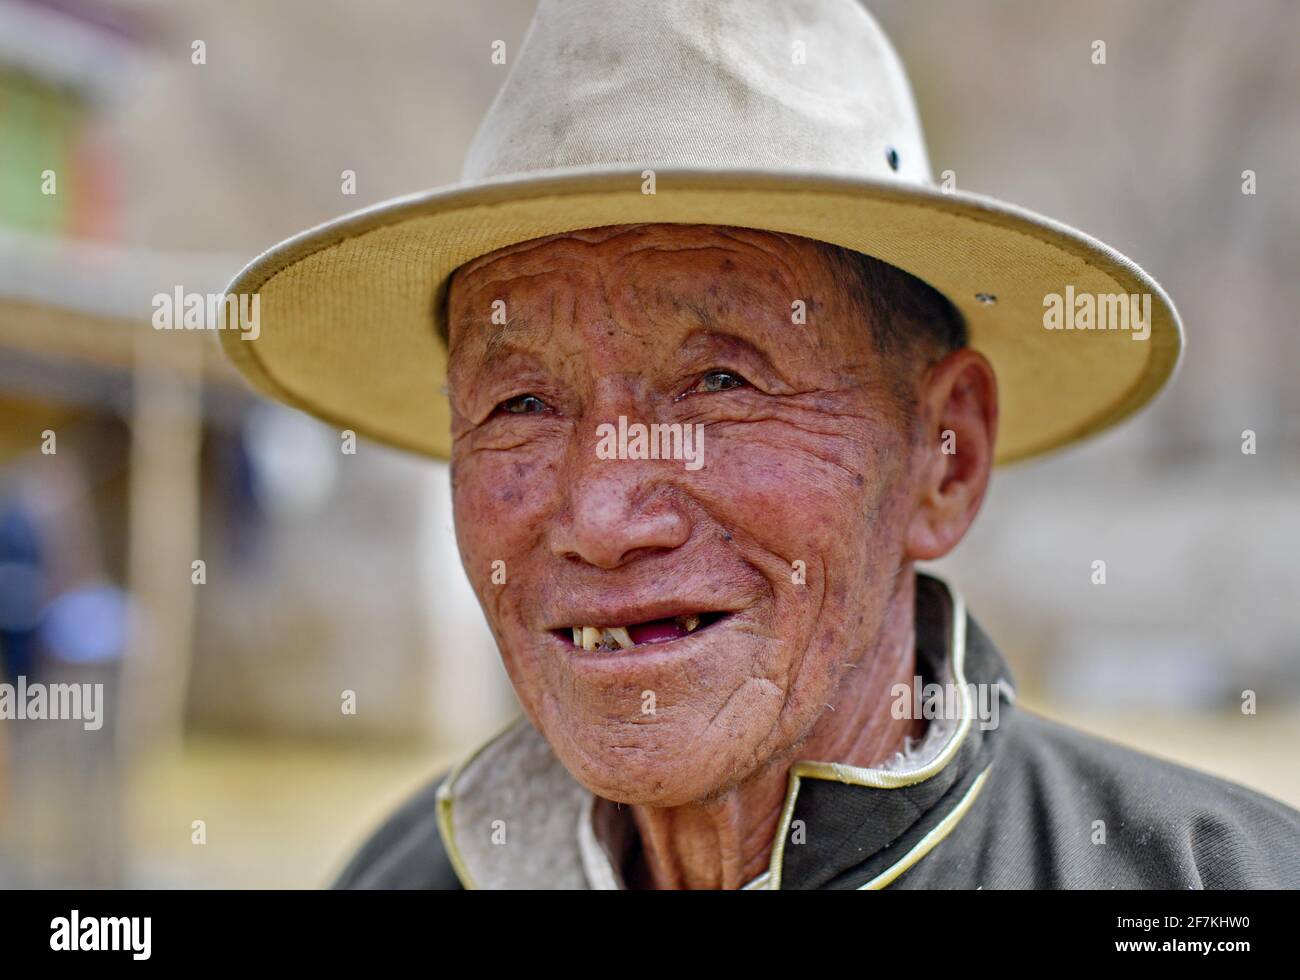 (210408) -- LHASSA, 8 avril 2021 (Xinhua) -- la photo prise le 20 mars 2021 montre le portrait de Dro Dra à Xigaze, dans la région autonome du Tibet du sud-ouest de la Chine. DRO Dra, un villageois de 85 ans à Xigaze, était autrefois un serf dans le vieux Tibet. De retour à l'époque, malgré le dur labeur toute l'année, la famille de Dro Dra ne pouvait pas avoir un grain d'orge de haute terre qu'ils ont grandi pour eux-mêmes. Année après année, ils ont lutté dans un cercle vicieux d'emprunter de la nourriture, de payer des impôts au seigneur et de retourner de la nourriture. 'L'eau bouillante exige du bois de chauffage, mais chaque herbe et arbre dans le manoir appartient au seigneur. Si nous W Banque D'Images